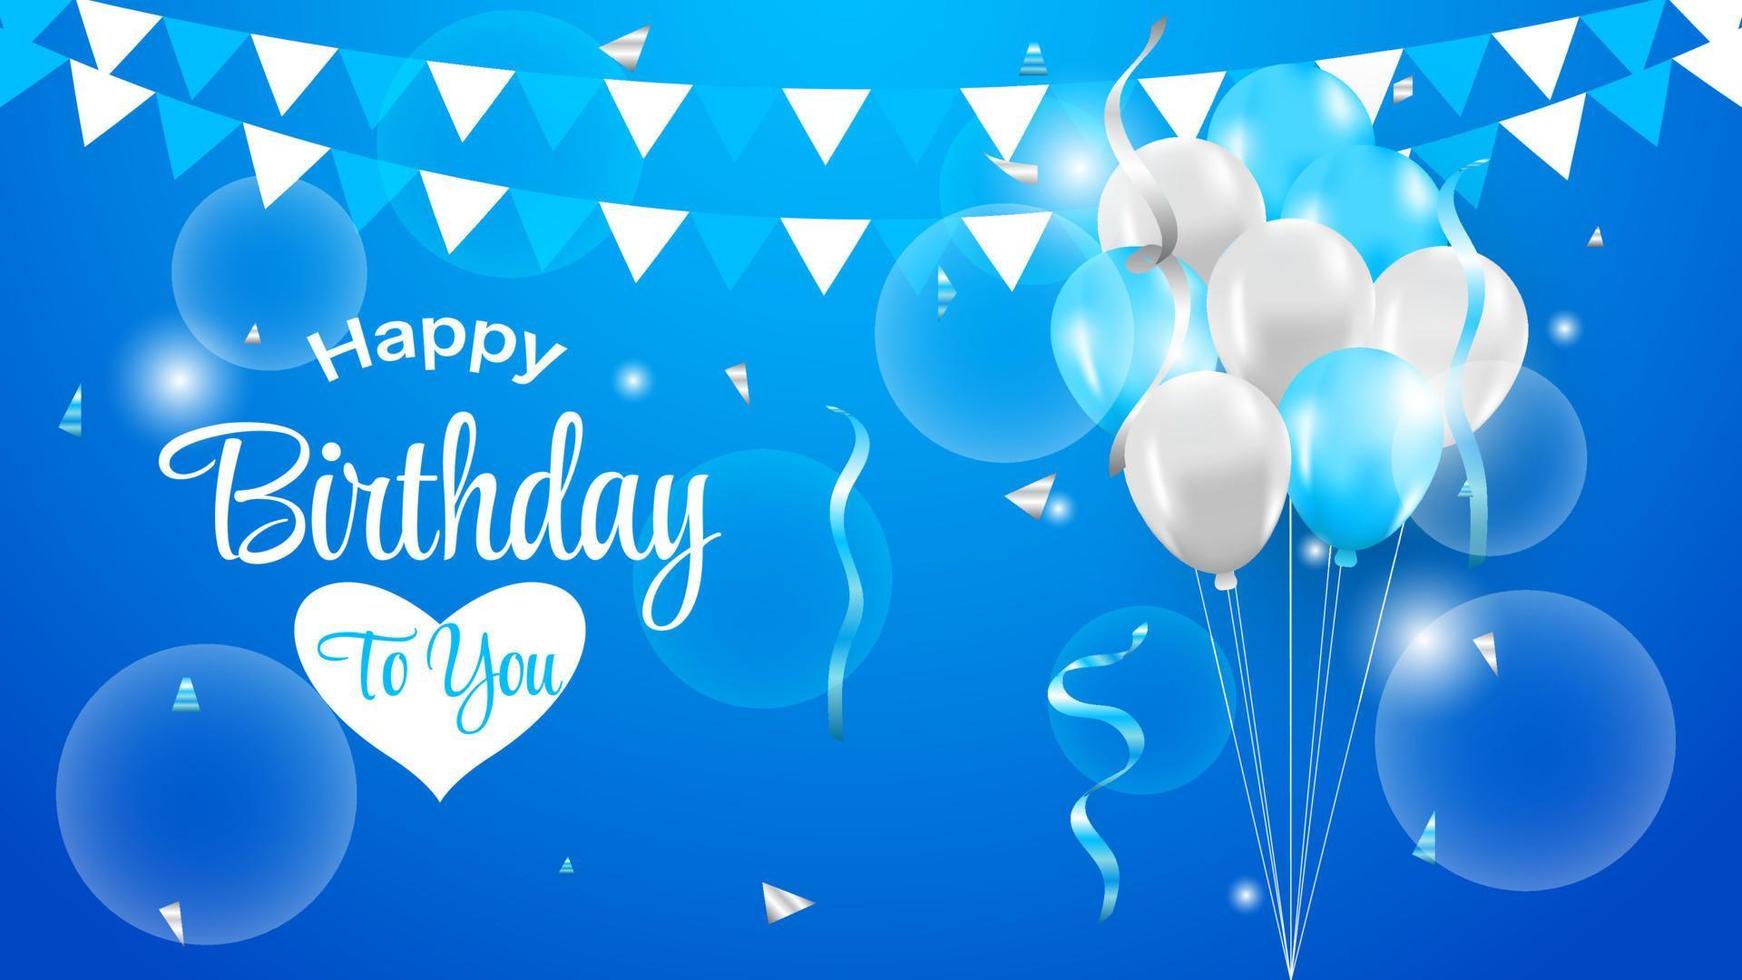 diseño vectorial de feliz cumpleaños para tarjetas de felicitación en azul y blanco con globos, confeti y luz vector